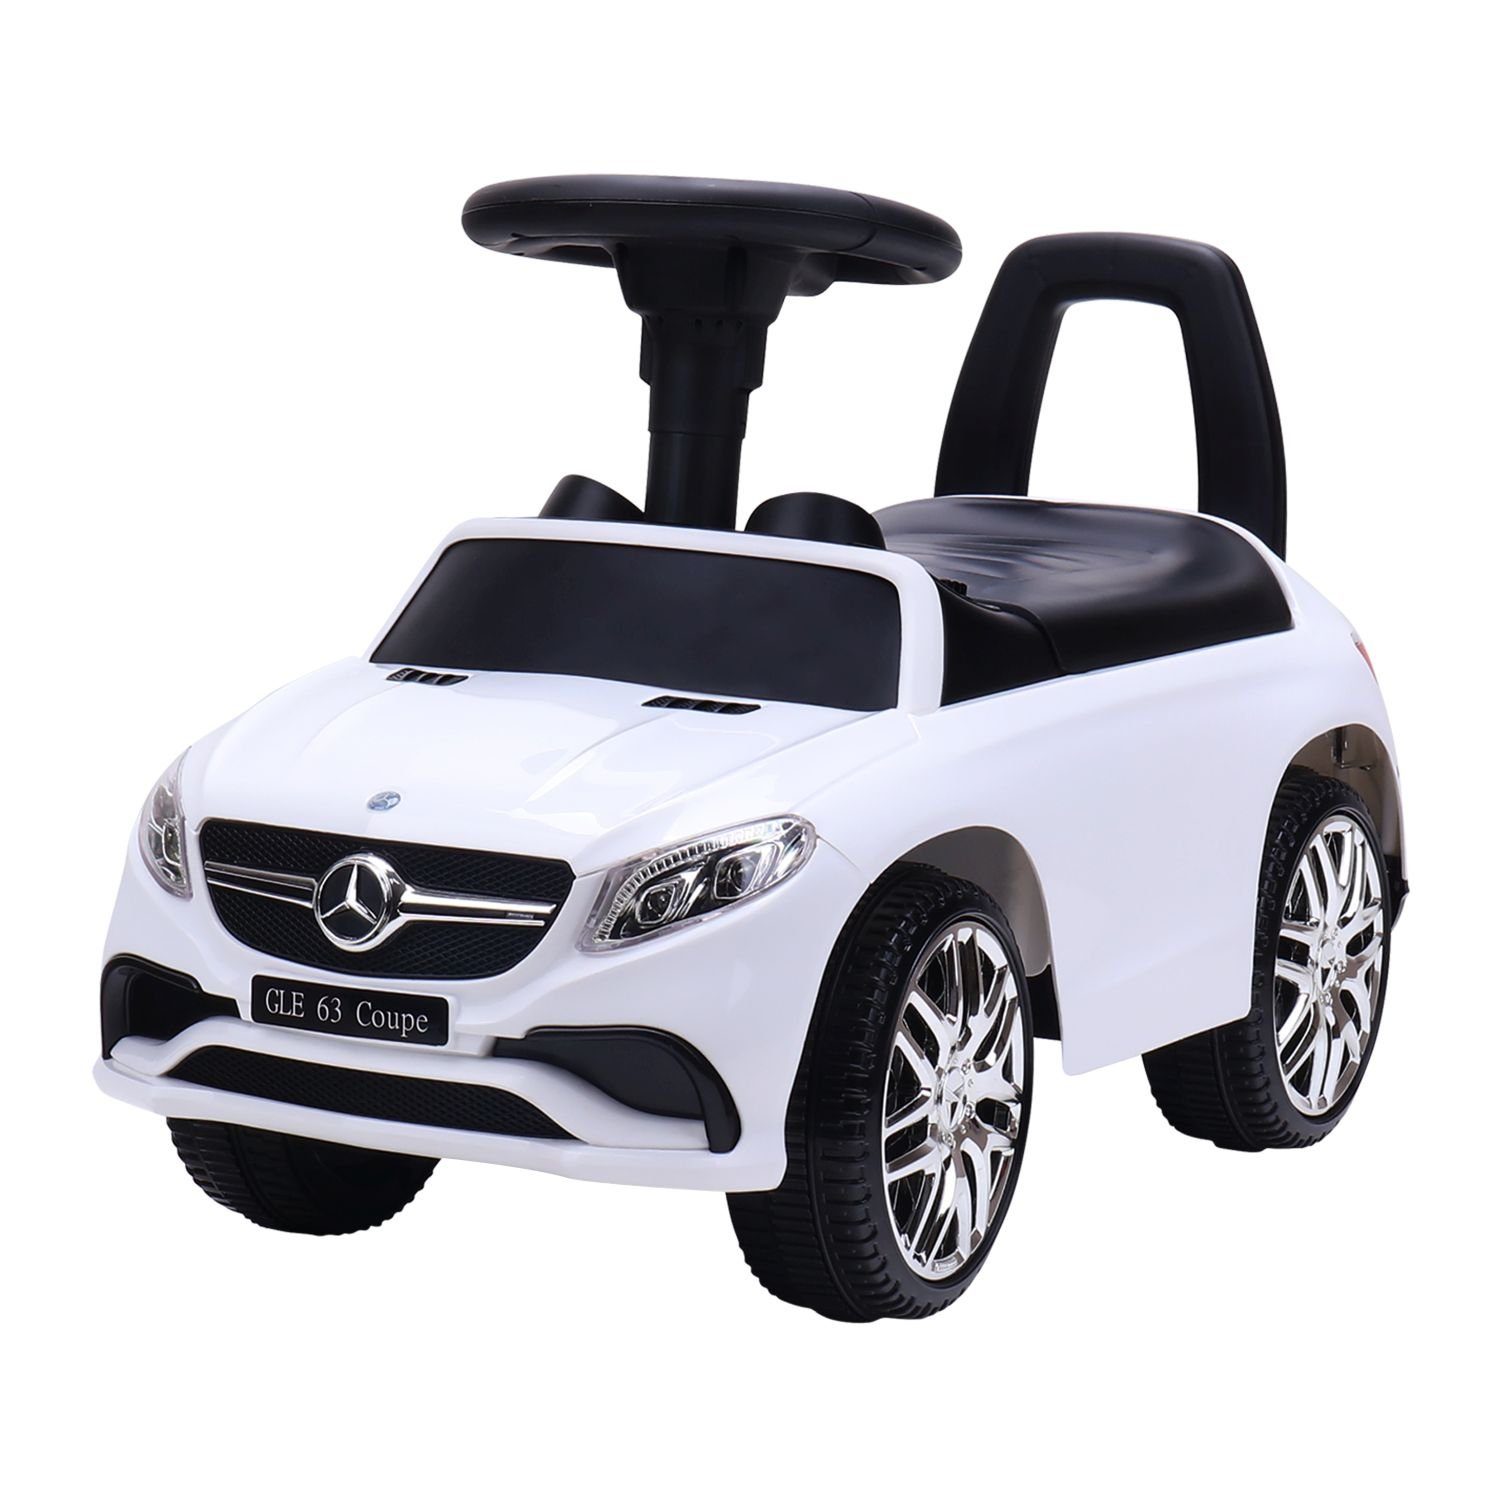 Toys Store Rutscherauto »Mercedes Benz GLE Kinderauto und Schiebeauto  Rutscher Rutschauto Hupe Weiss« online kaufen | OTTO